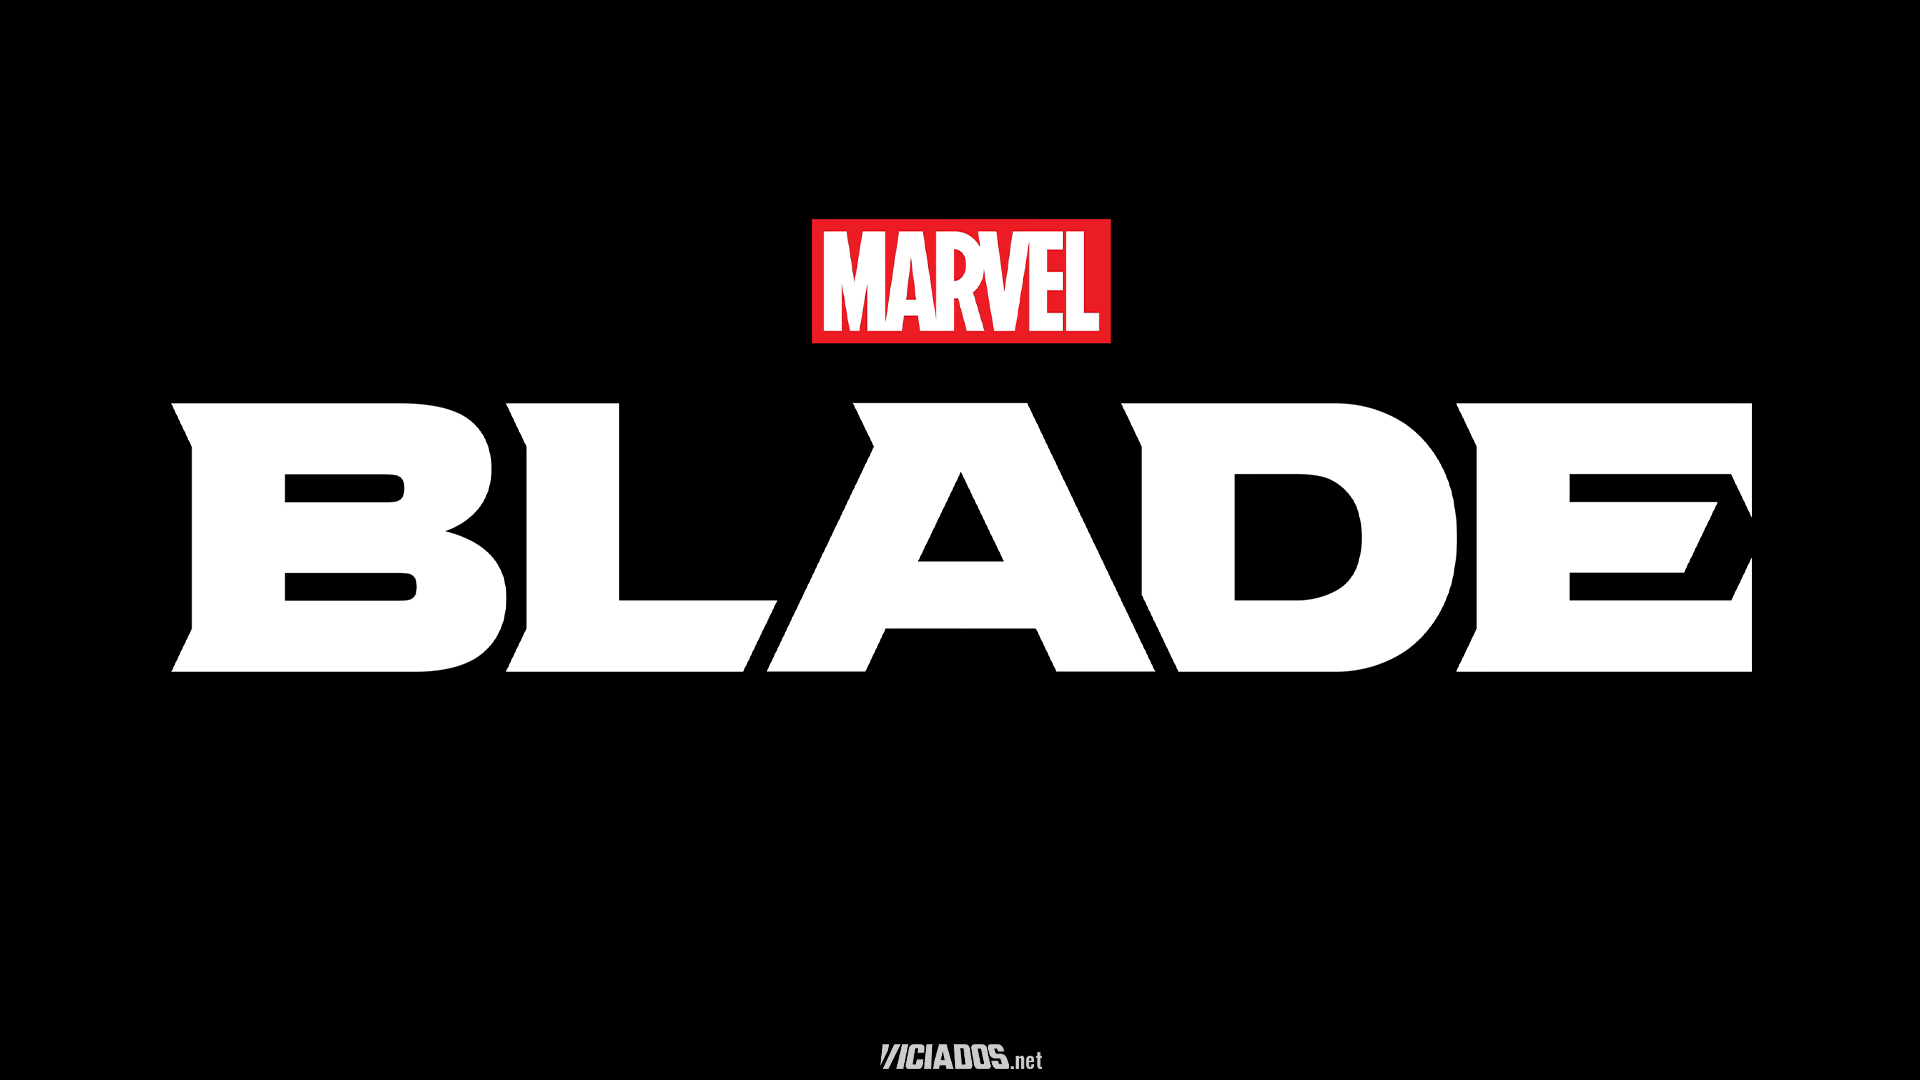 Microsoft, Bethesda e Marvel anunciam jogo do Blade 2024 Portal Viciados